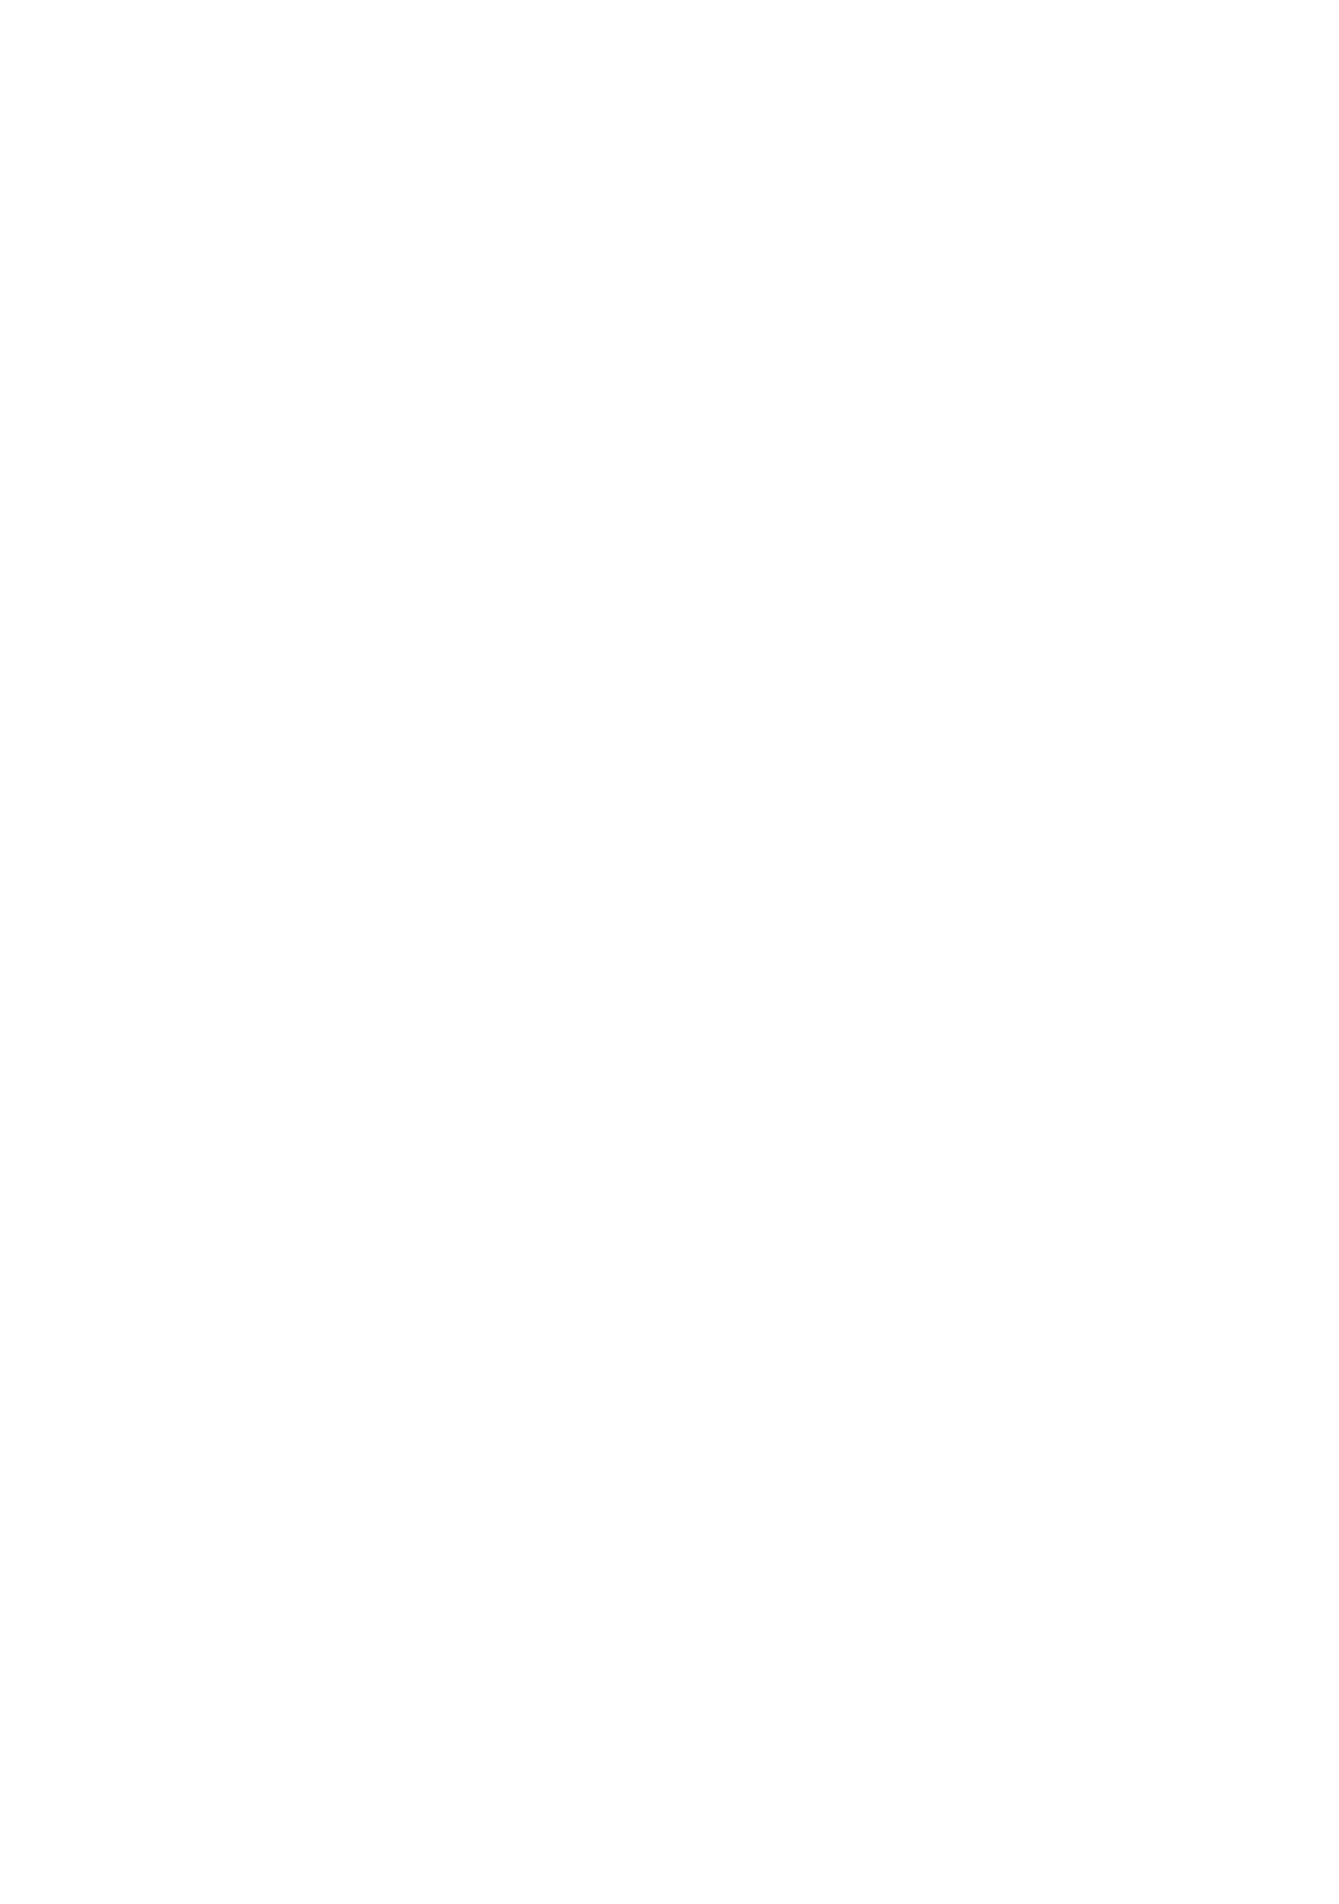 Teichzeit.at - Logo + Text